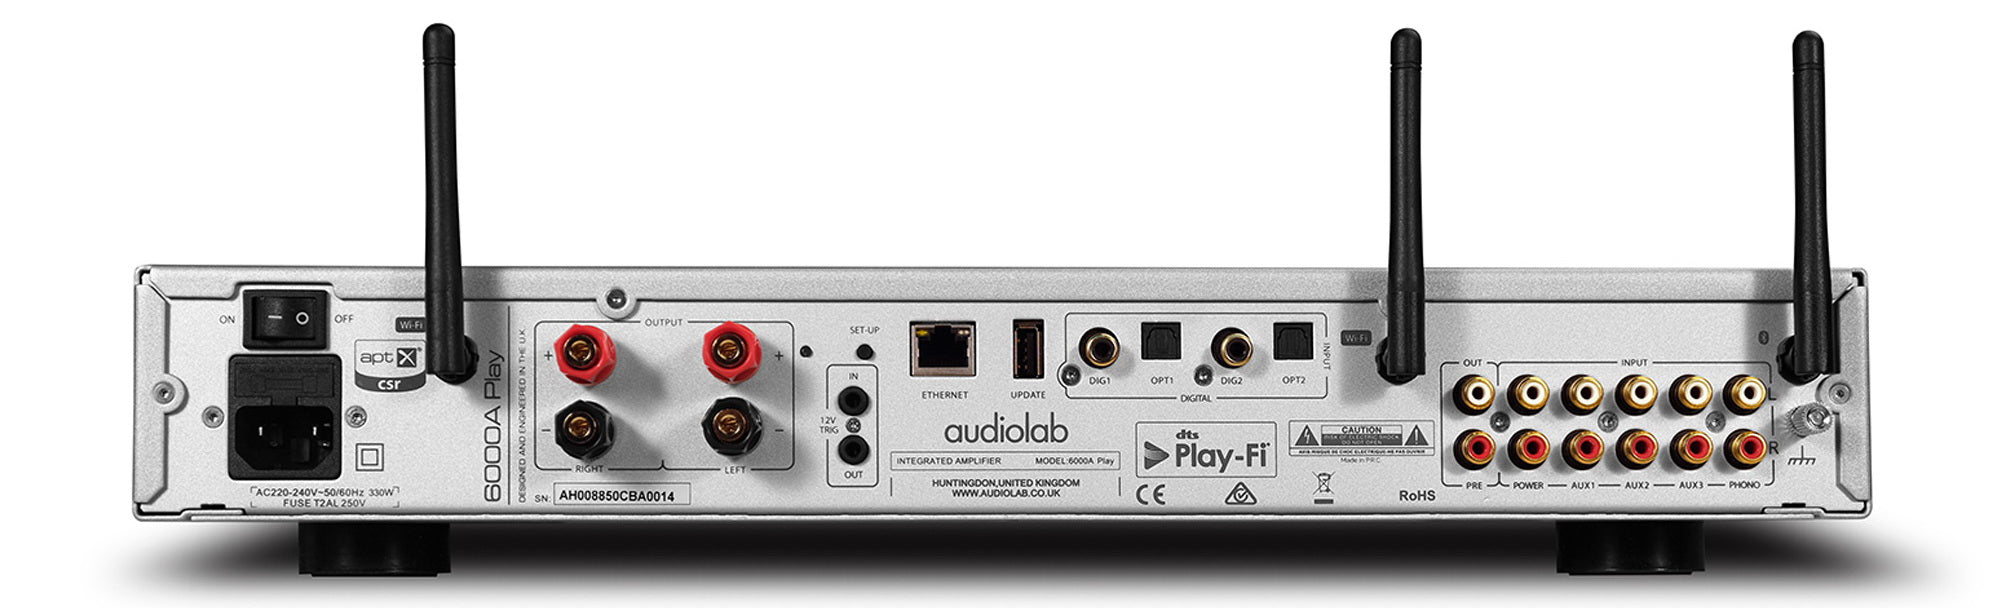 Audiolab 6000A PLAY - Amplificateur 50Watts/C, lecteur réseau et DAC